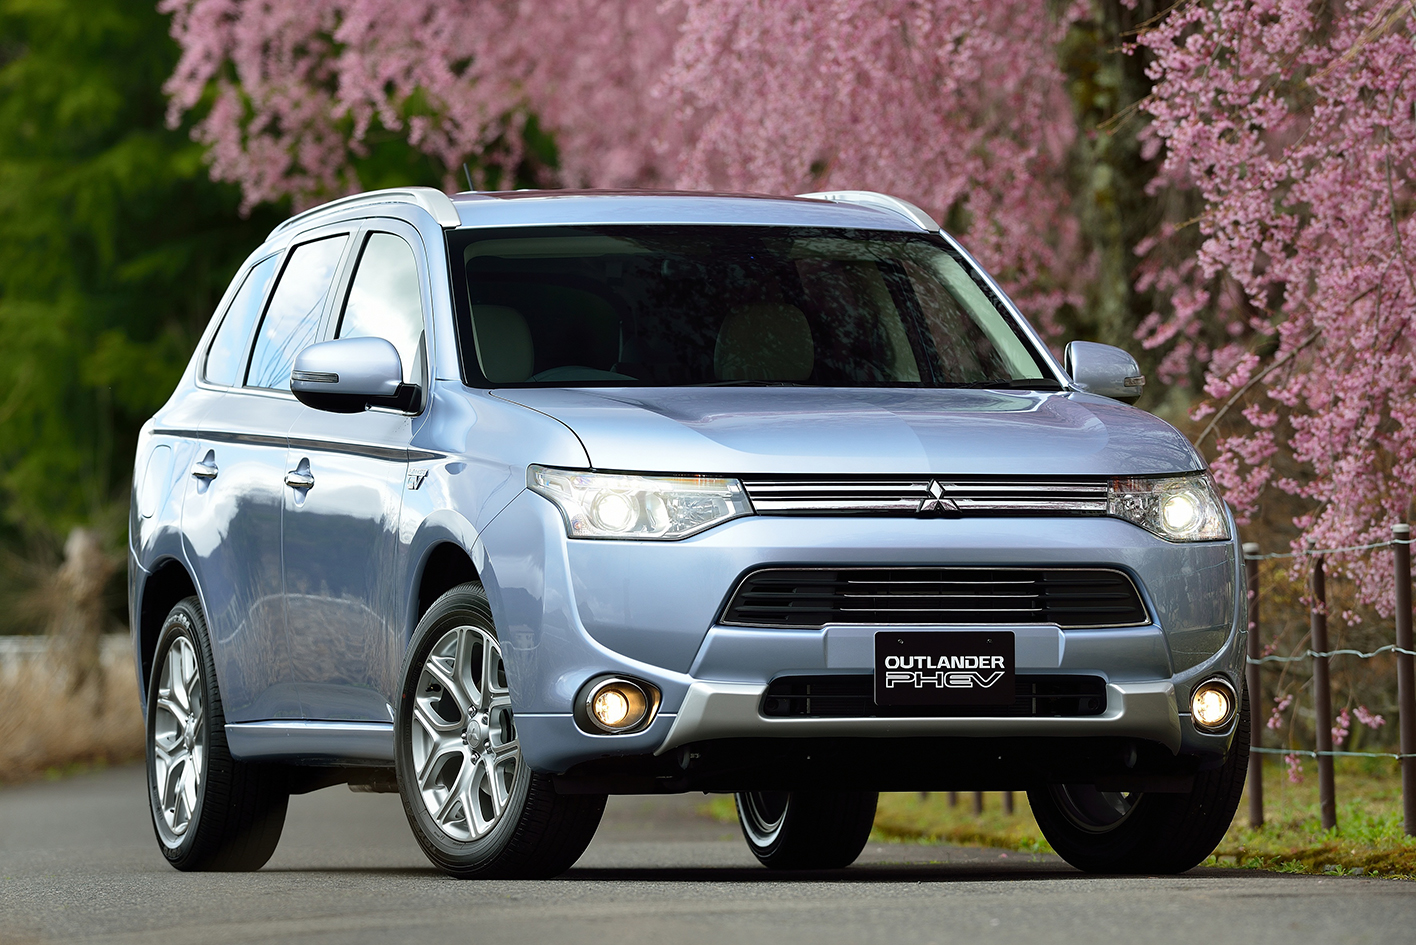 Seit dem 17. Mai 2014 steht das Plug-in Hybrid Outlander bei den Mitsubishi Händlern. Nach 5-Sternen beim Euro NCAP hat das sparsame und umweltfreundliche Fahrzeug jetzt auch in Japan die Bestwertung von 5 Sternen erhalten. Bildquelle: Mitsubishi